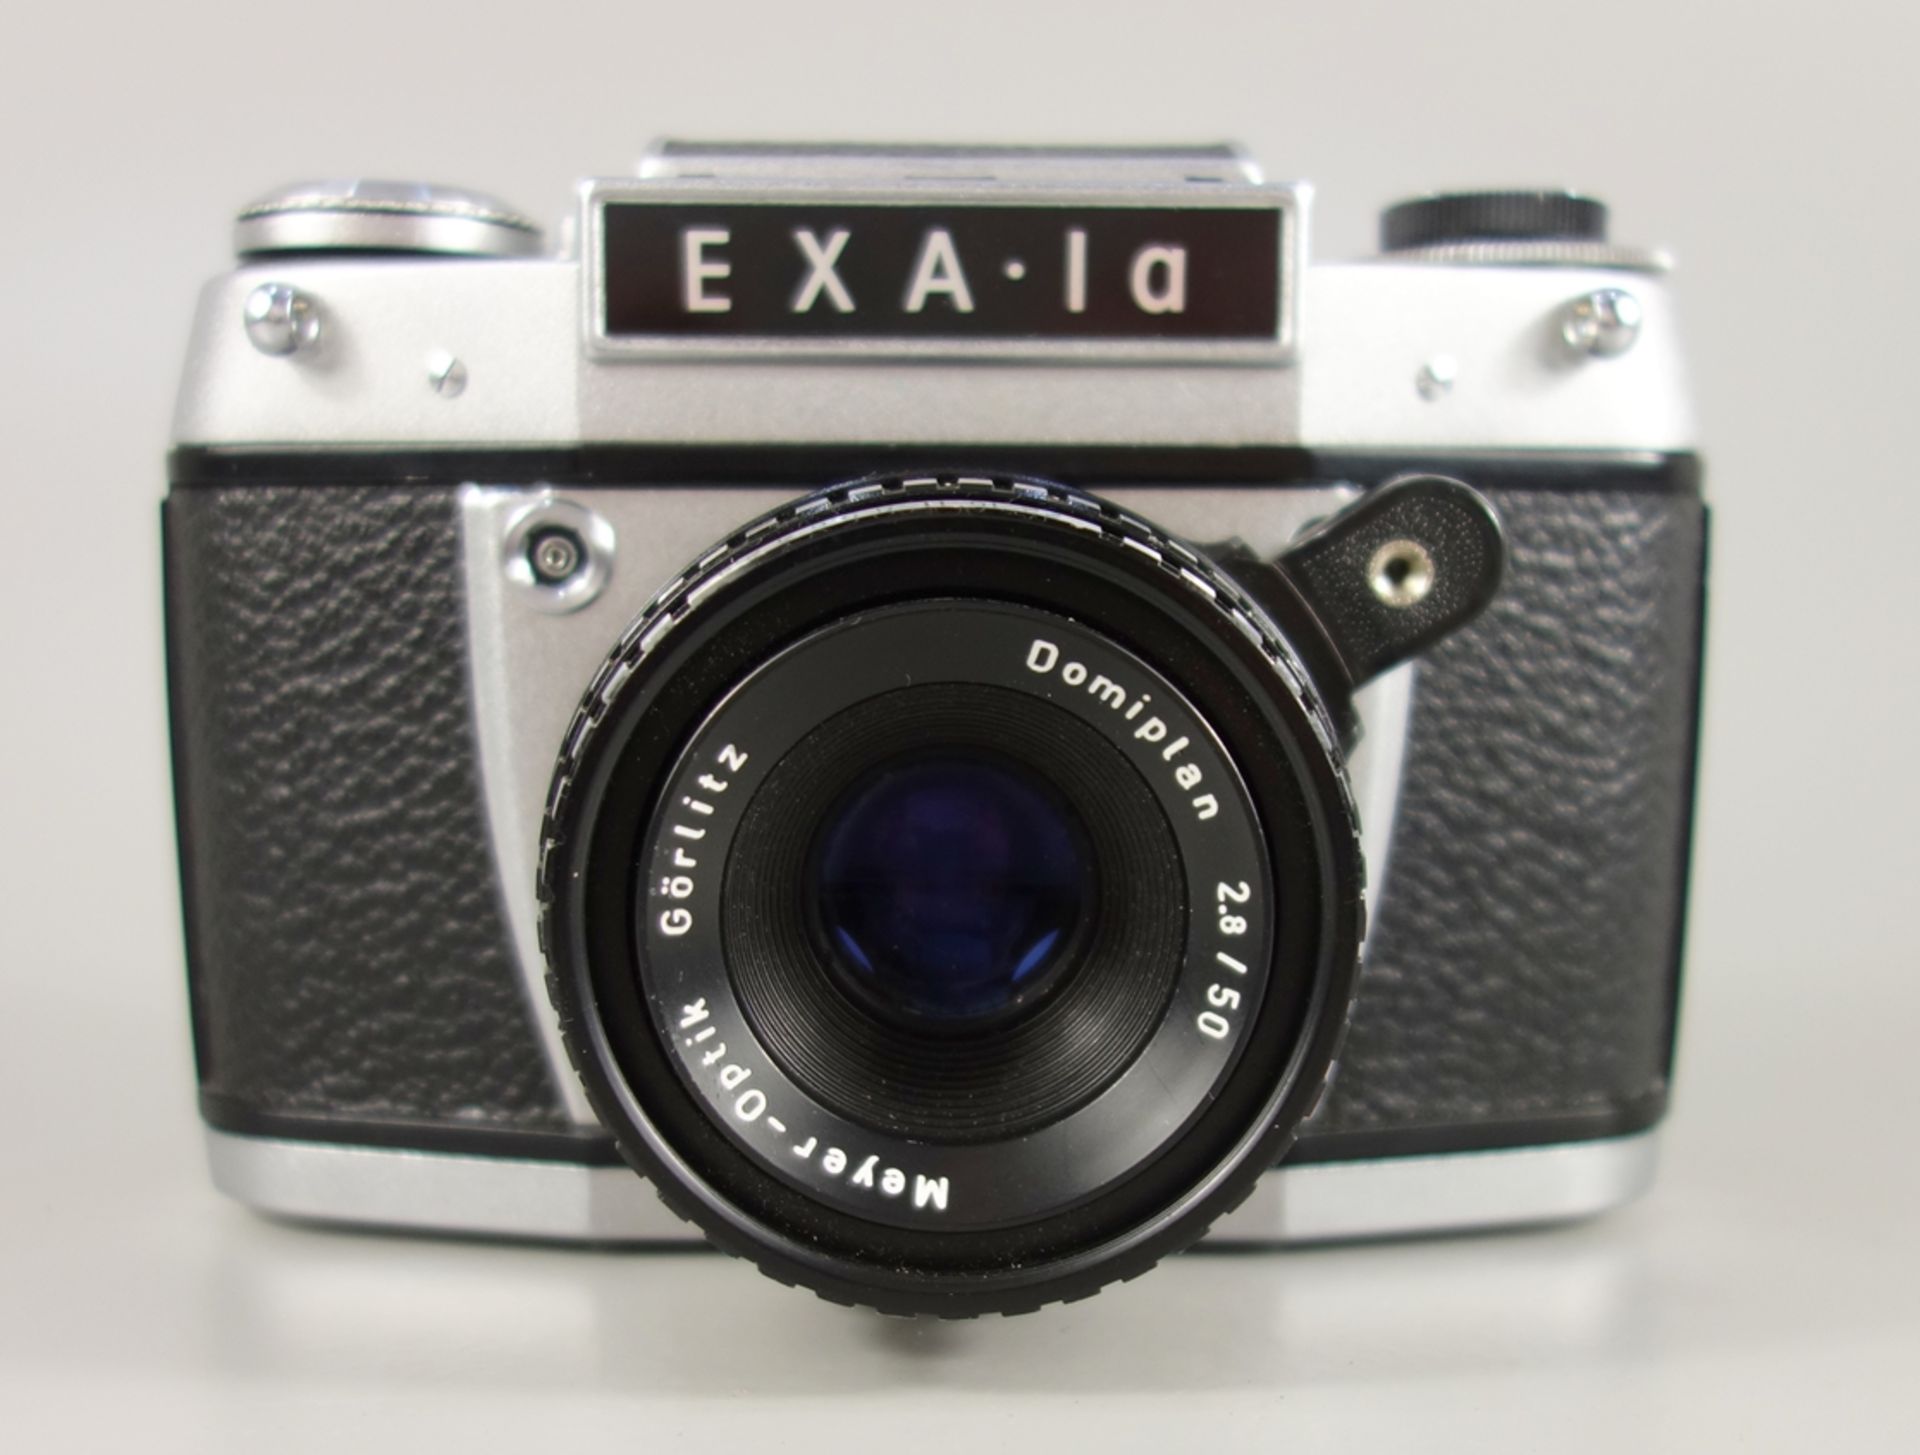 Exa Ia, Dresden, späte 1960er Jahre, Spiegelreflexkamera, Serien-Nr. 408042, mit Objektiv Meyer- - Bild 2 aus 5